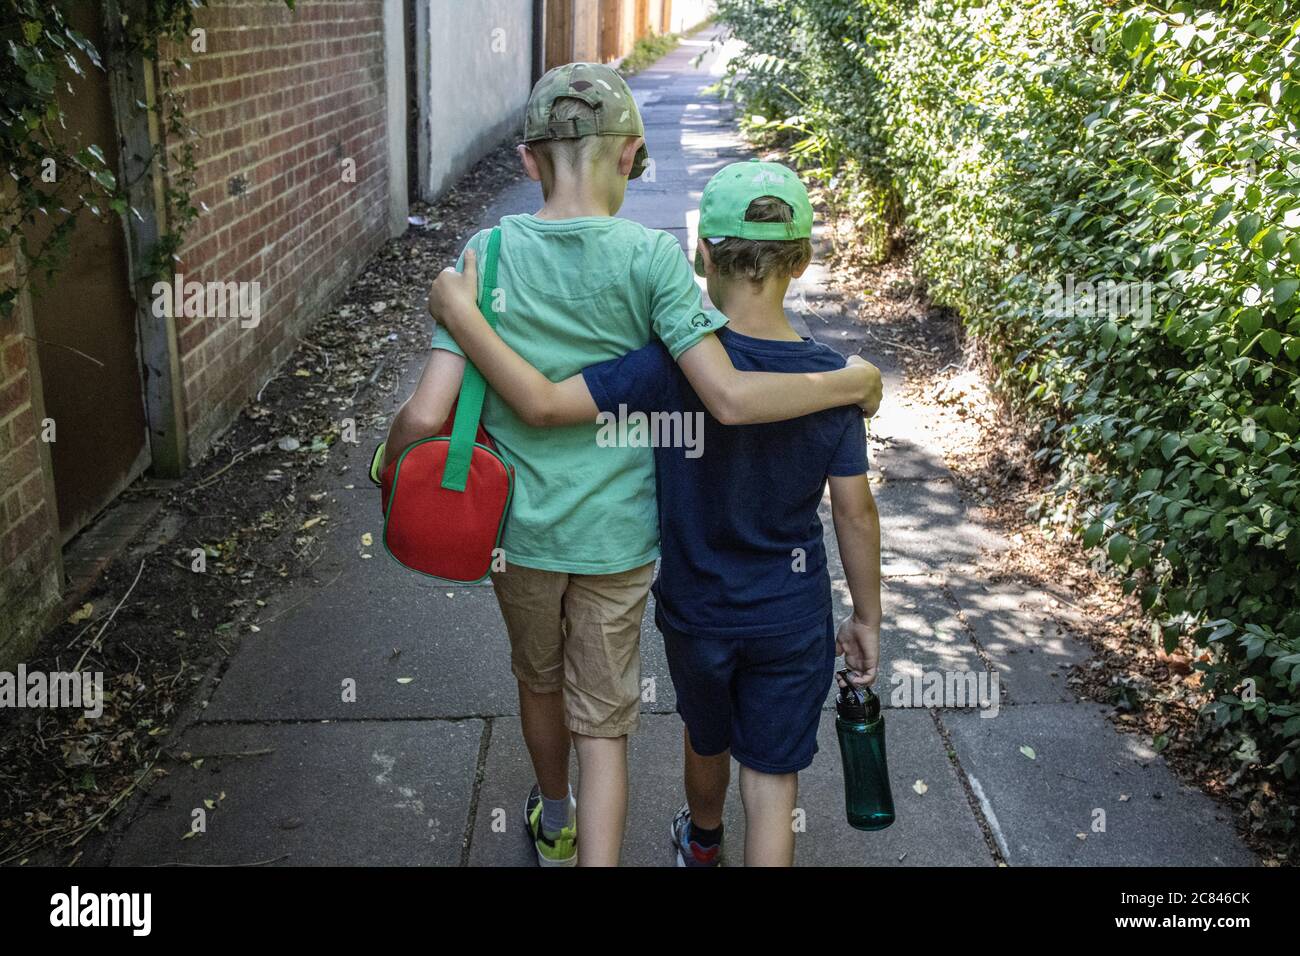 Brüderliche Liebe, zwei junge Brüder gehen zusammen, Arme um einander Schultern, London, England, Vereinigtes Königreich Stockfoto